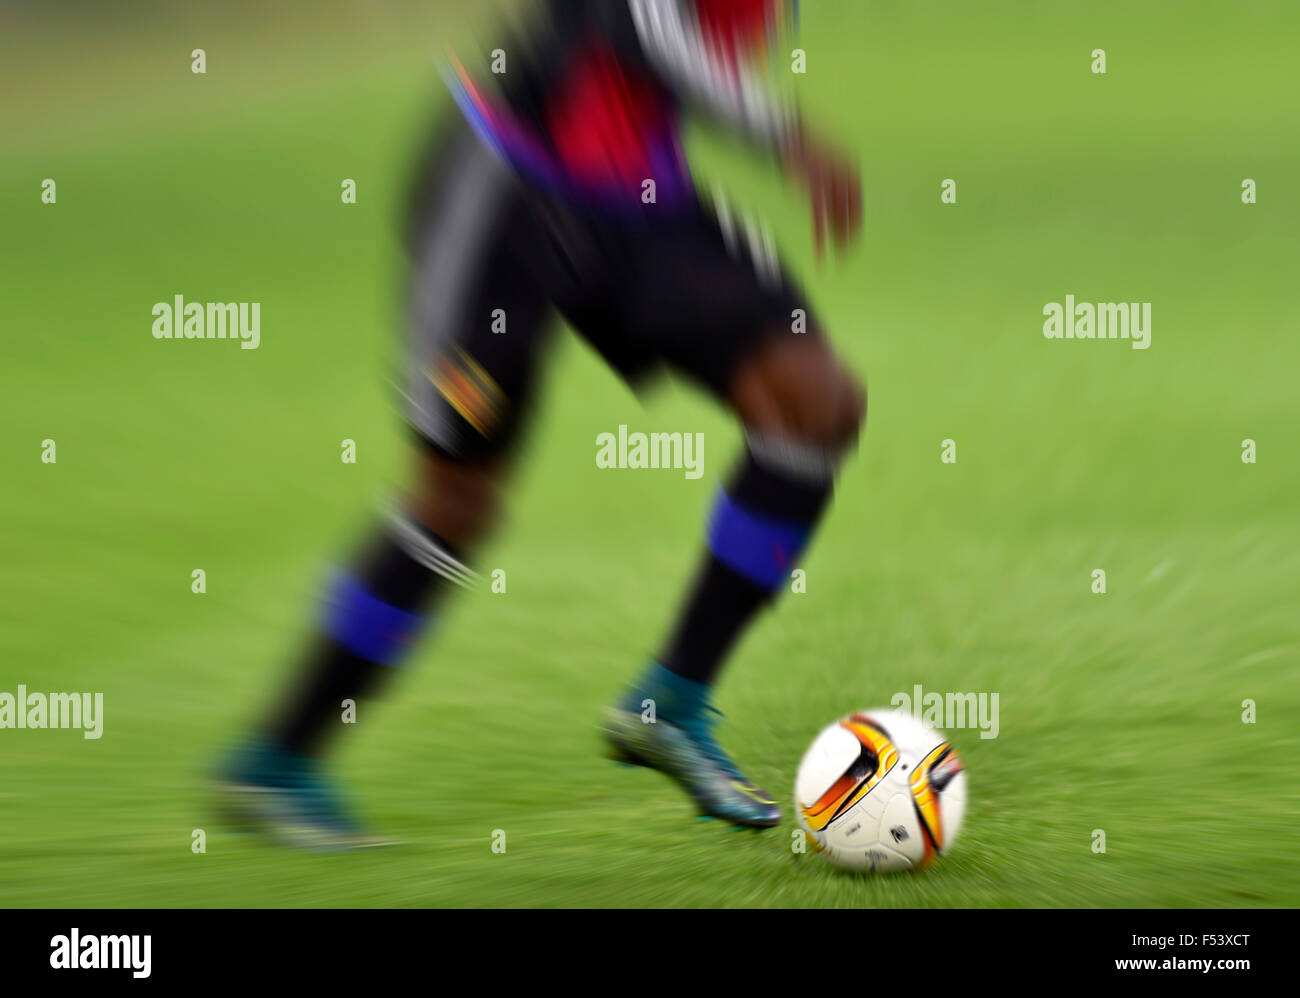 Fußball und die Beine eines Fußballspielers gezoomt, Basel, Schweiz Stockfoto